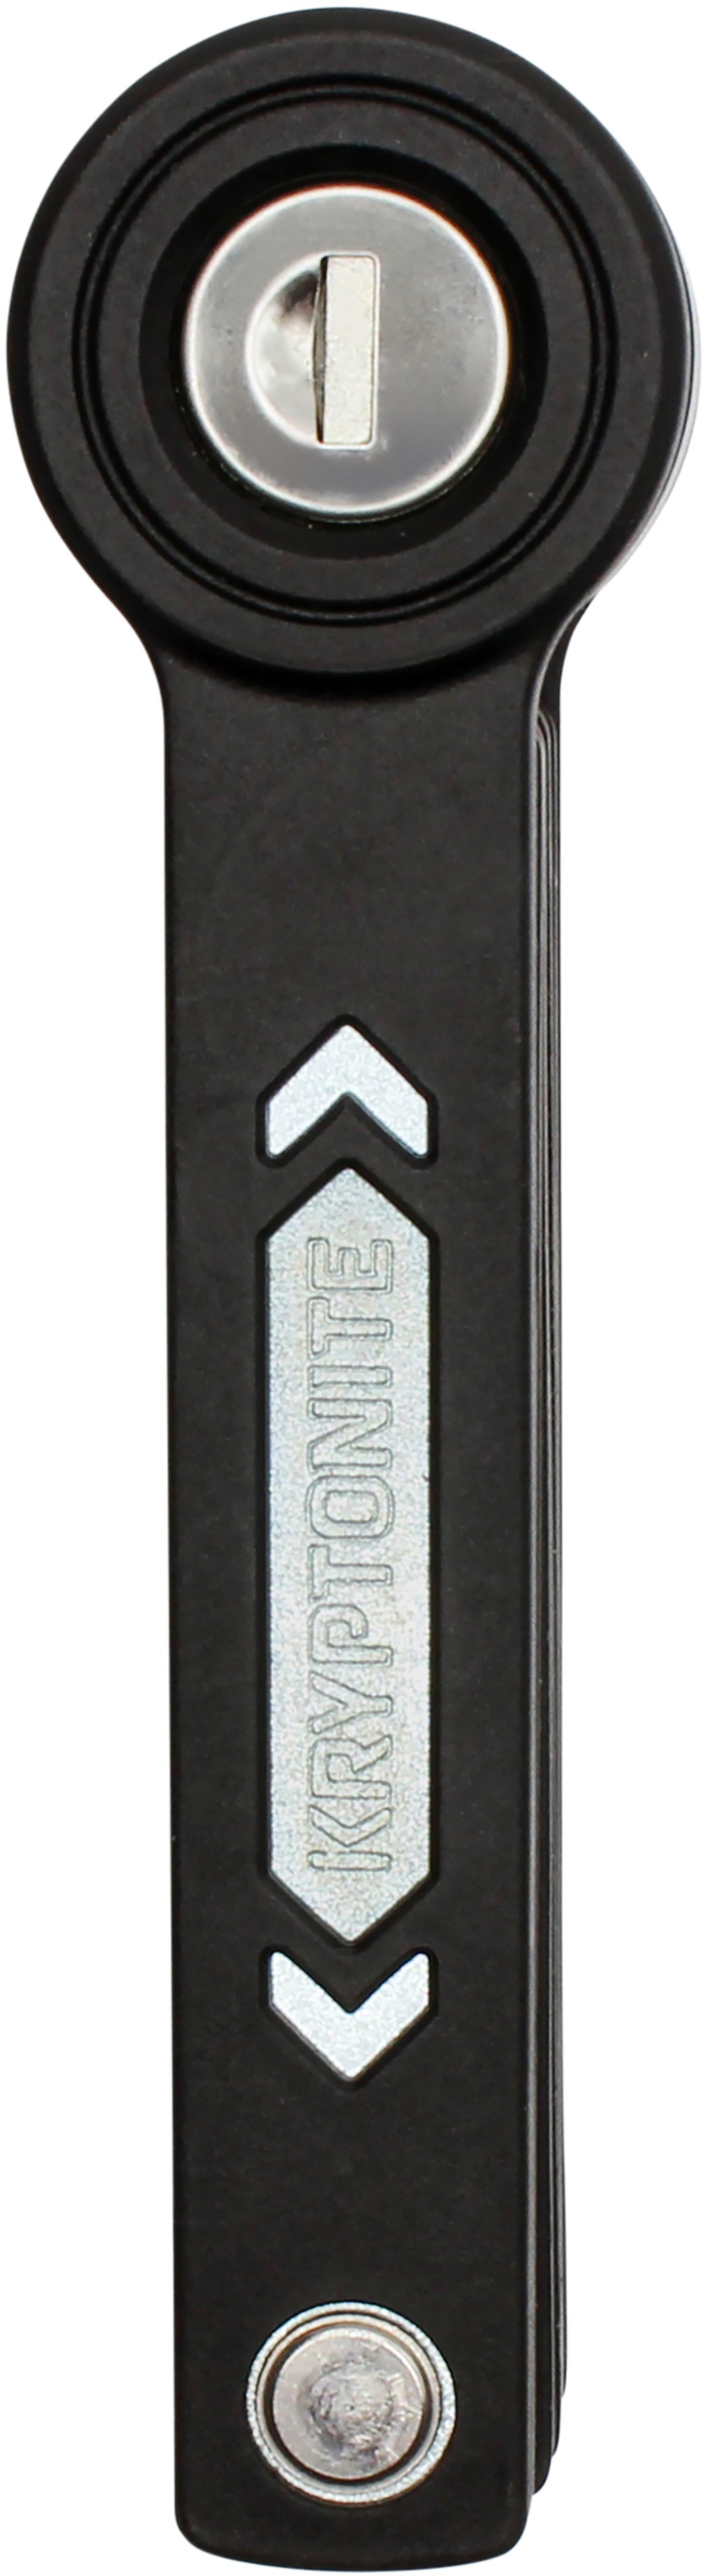 Tilbehør - Cykellås - Kryptonite Foldelås Kryptonite Keeper Mini - 80cm